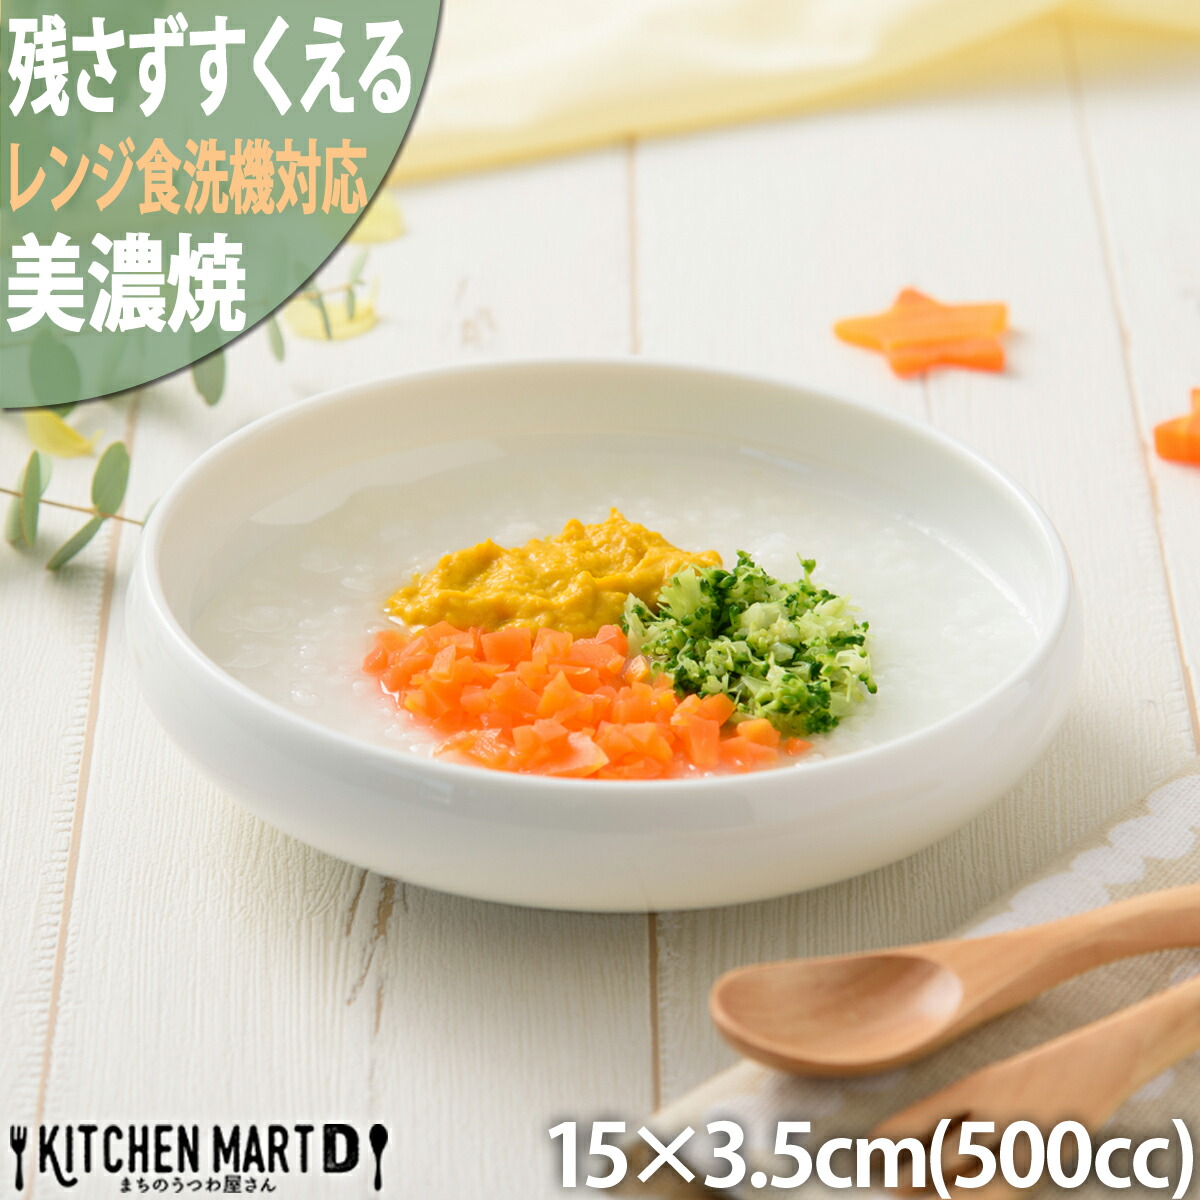 鉄鉢 残さずすくえる ボウル 15×3.5cm 500cc 美濃焼 日本製 小田陶器形状リニューアル 白 小さい すくいやすい カレー皿 スープ 食器 白磁 陶器 かわいい